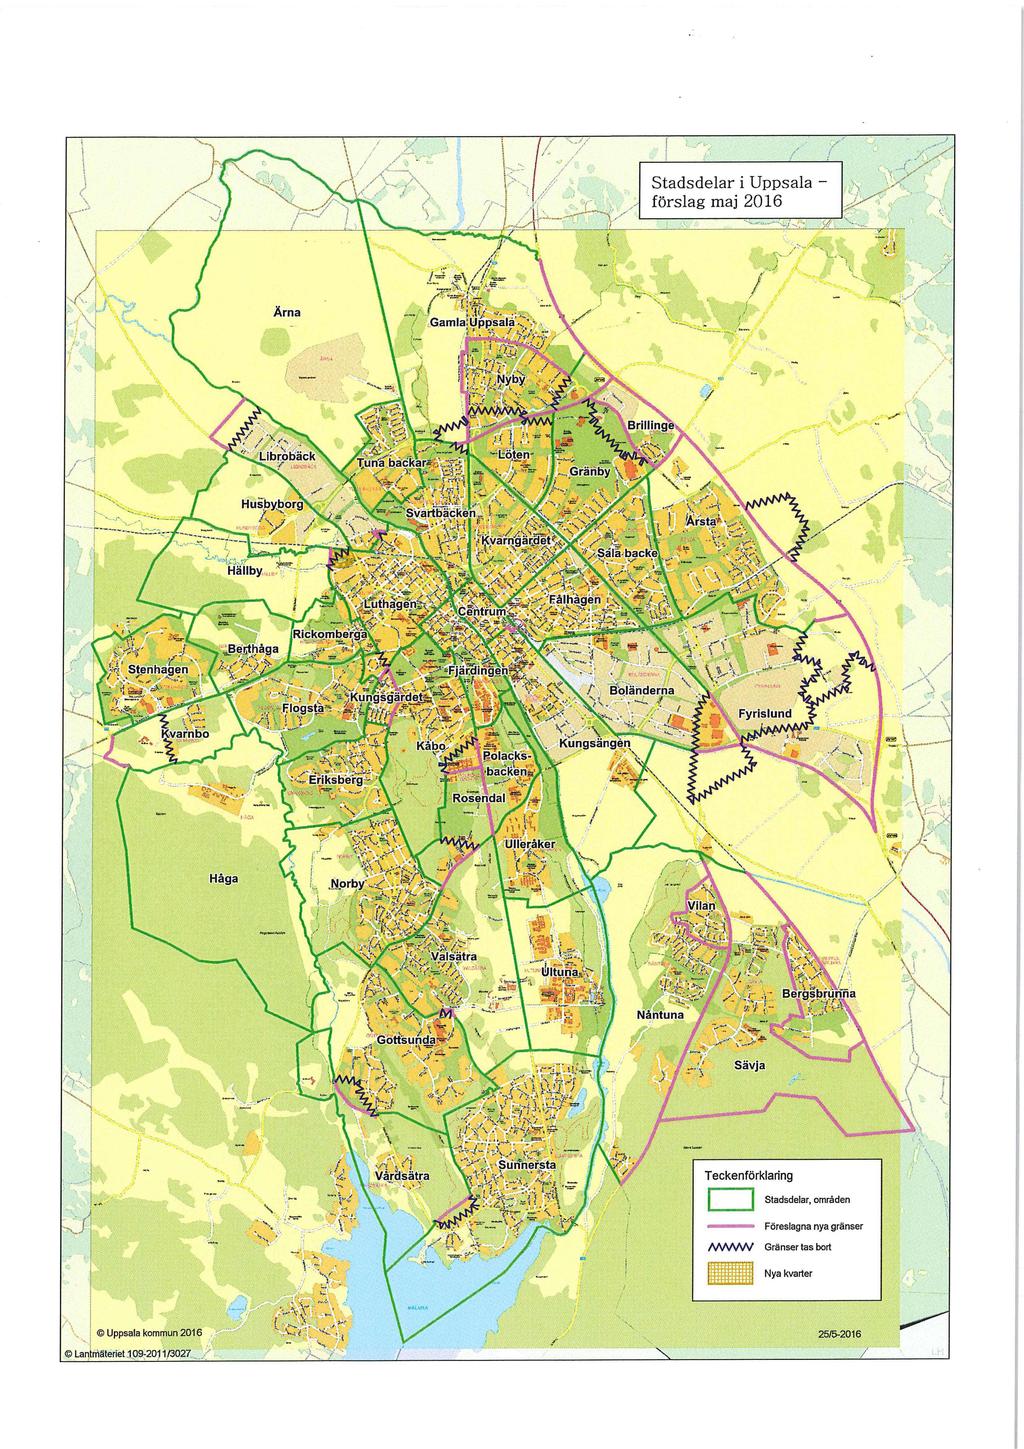 Stadsdelar i Uppsala förslag maj 2016 KvatInho Teckenförklaring Stadsdelar, områden Föreslagna